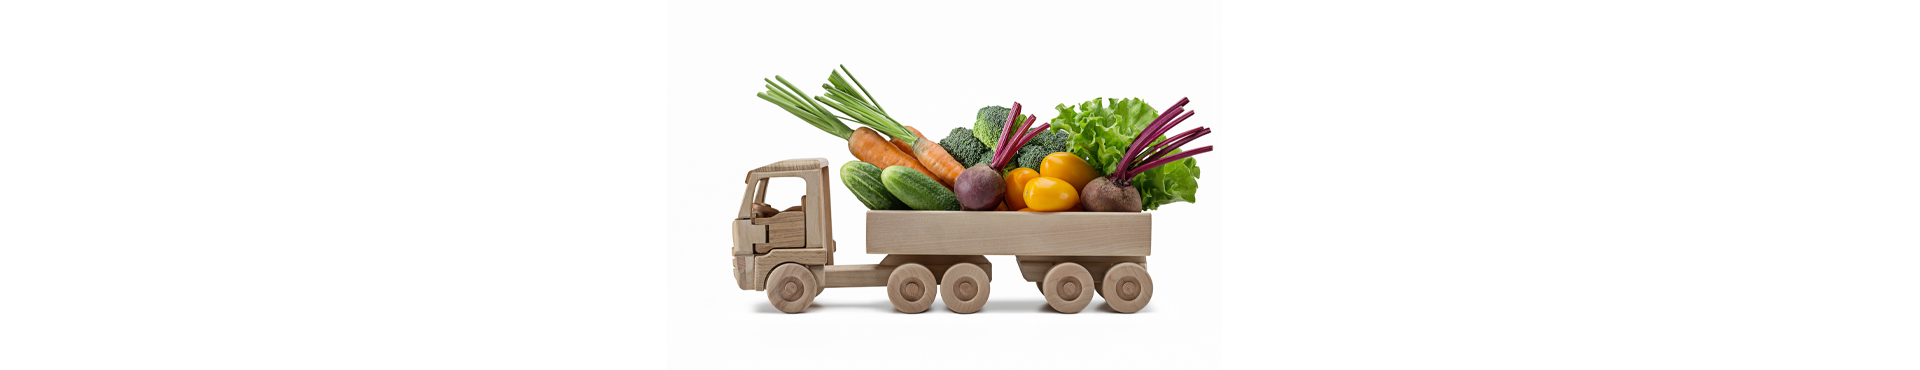 W jakich warunkach powinno się transportować warzywa i owoce?